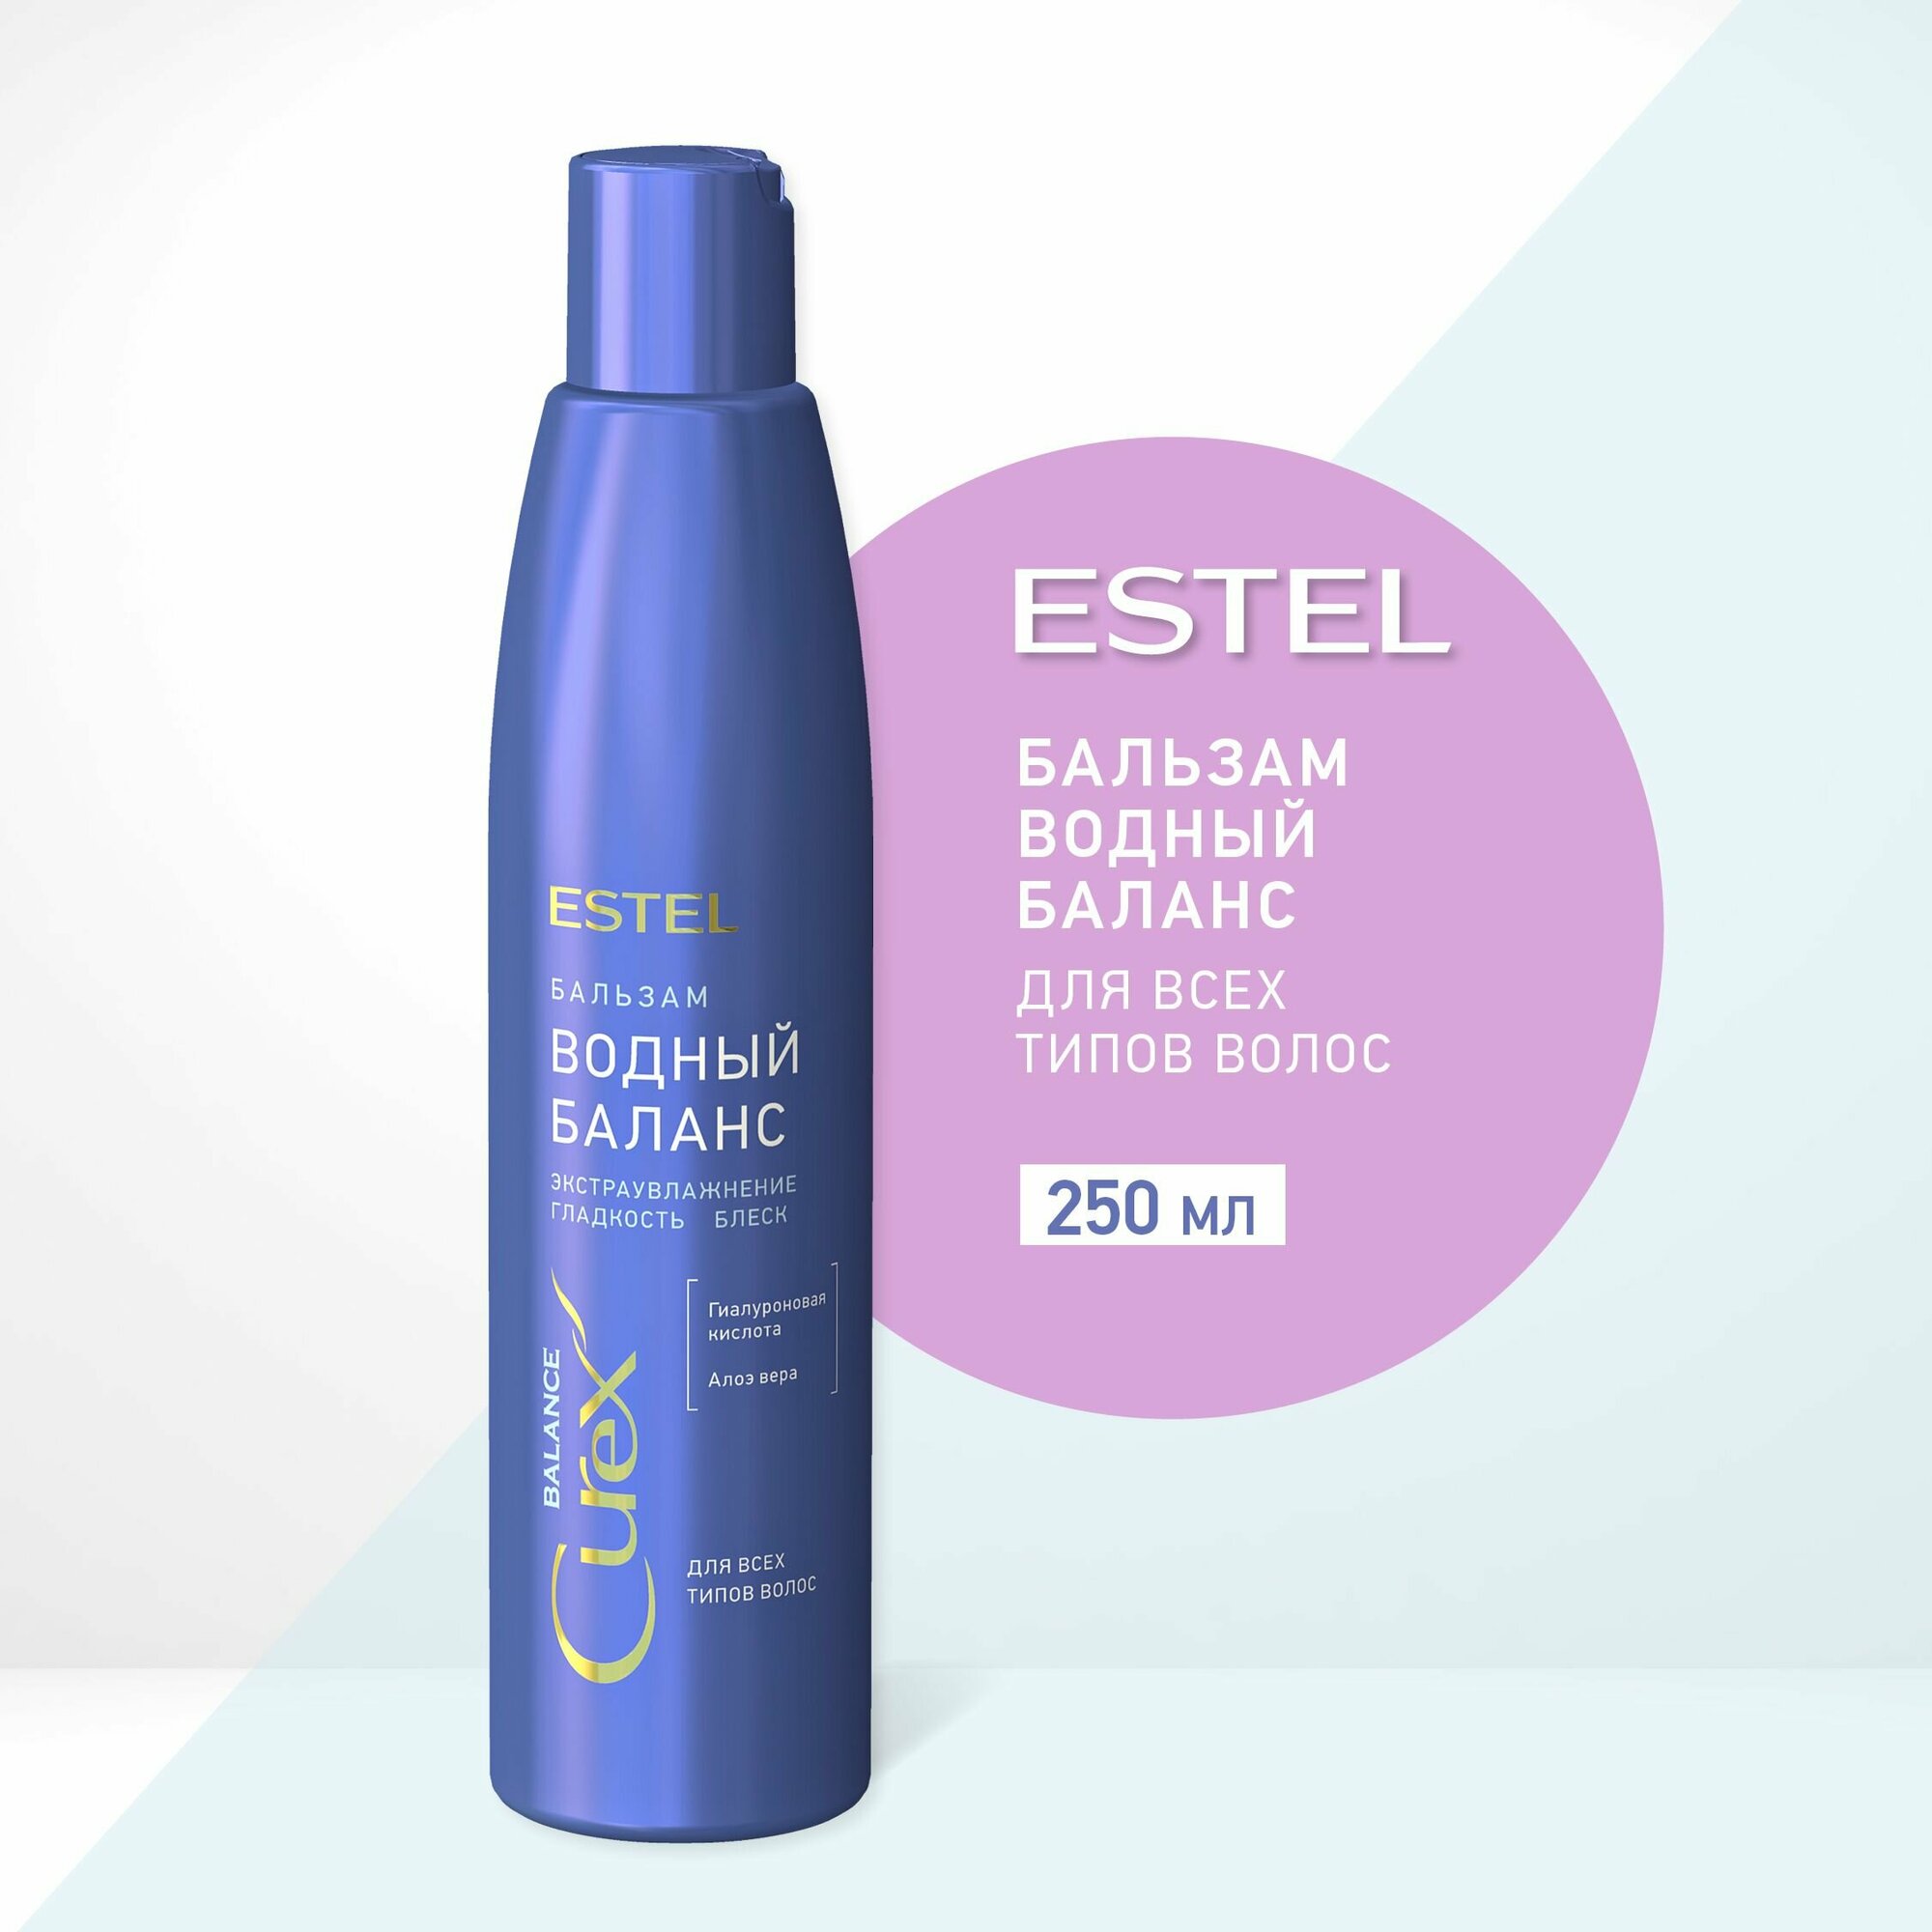 ESTEL Curex BALANCE, Увлажняющий бальзам для волос "Водный баланс", блеск и эластичность